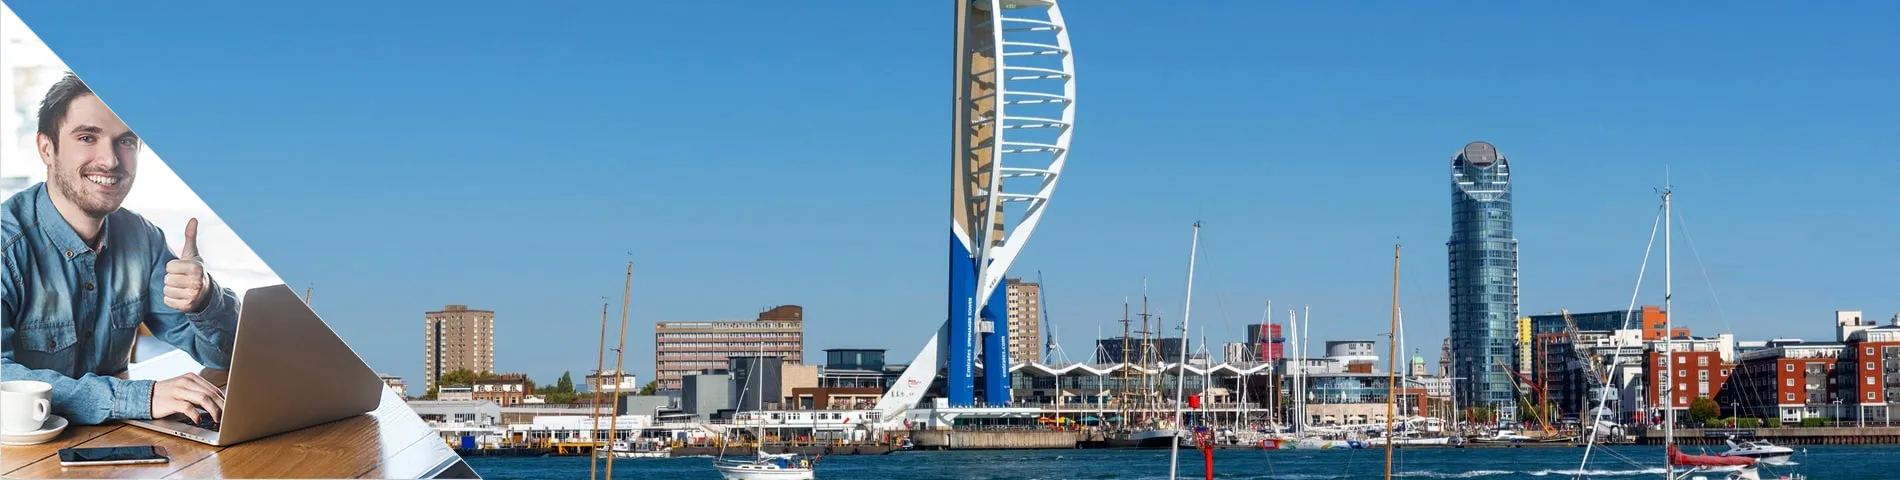 Portsmouth - Inglese & Inserimento nel Mondo del Lavoro